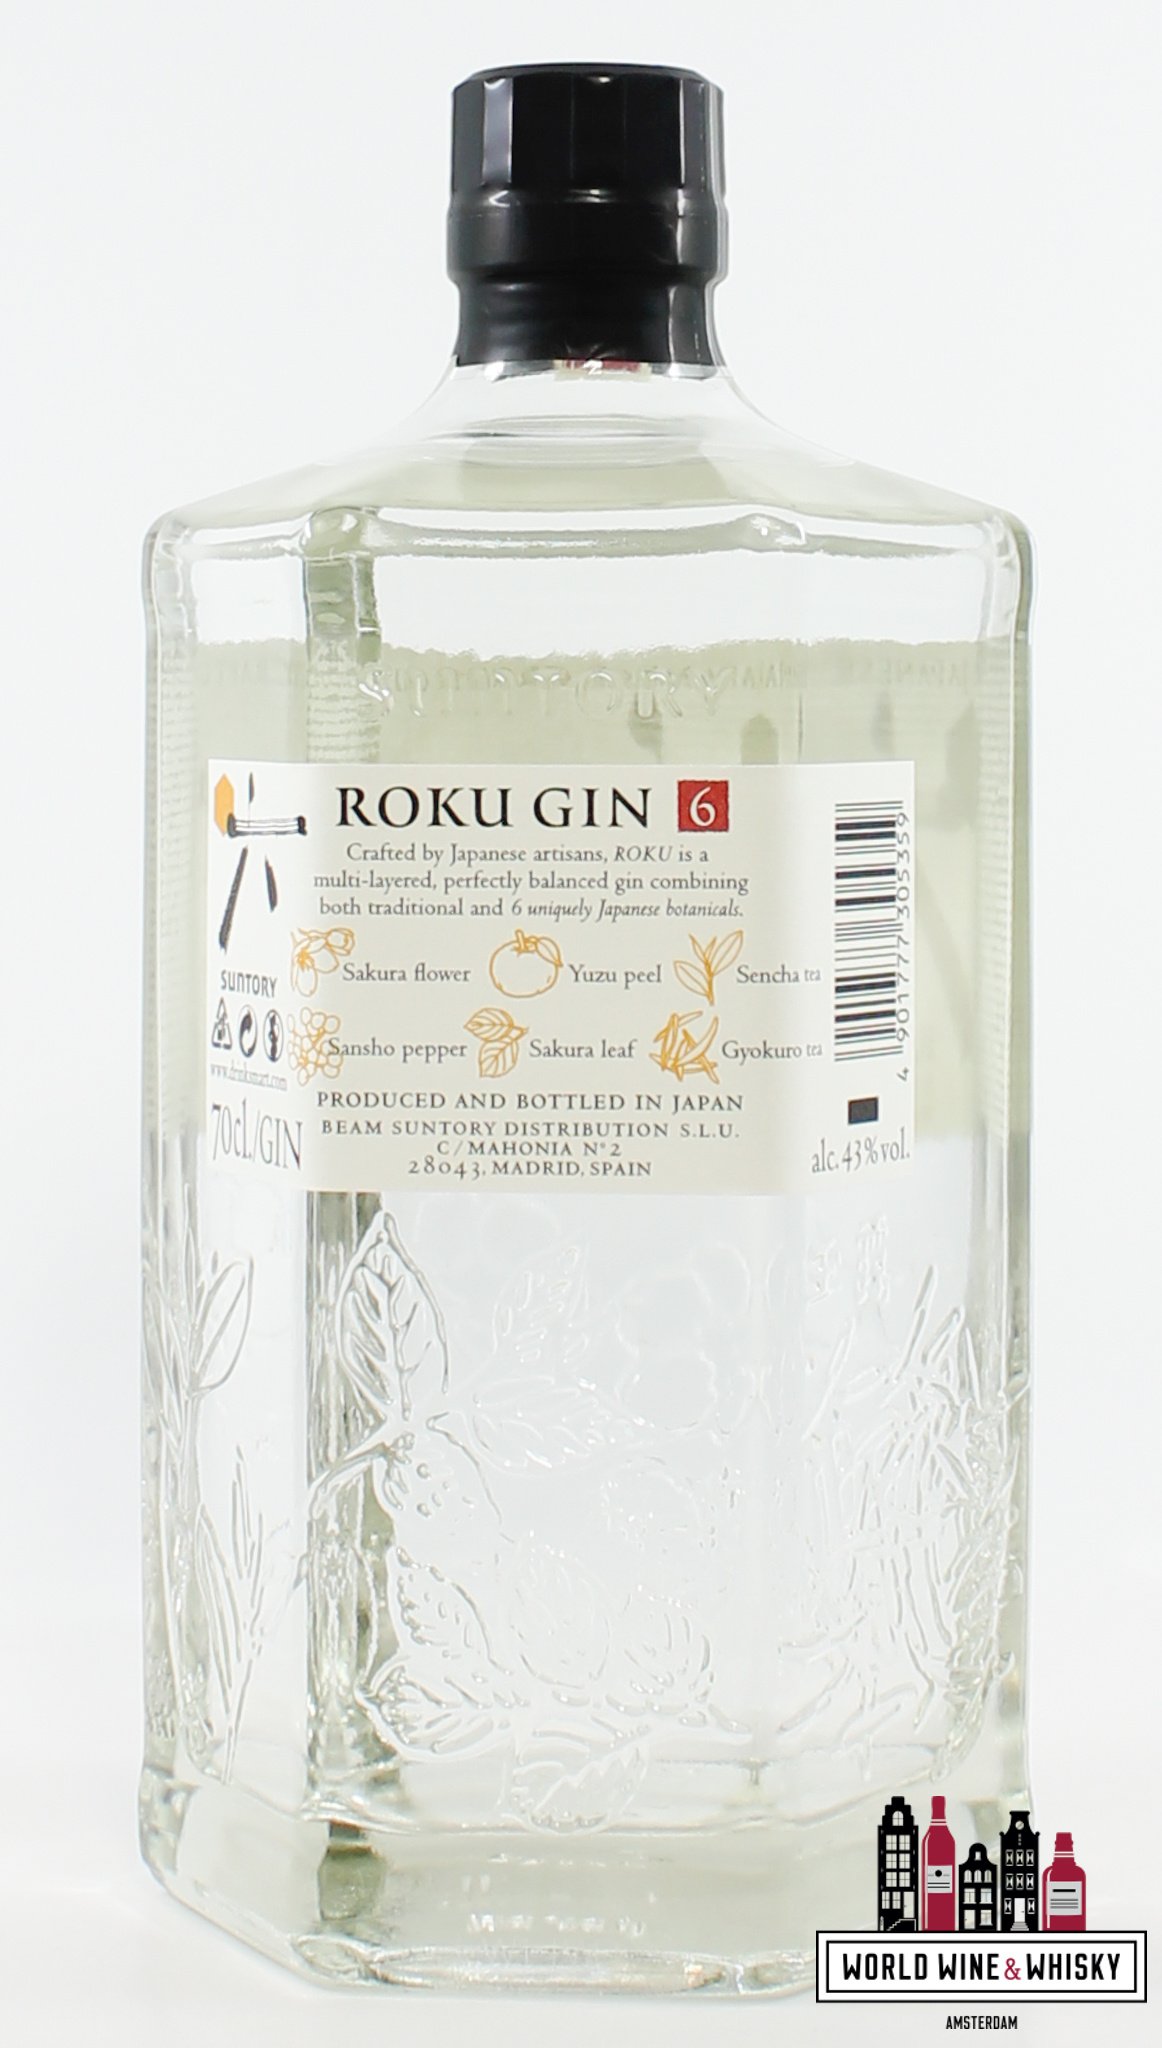 Roku Gin Roku Gin - The Japanese Craft Gin (Suntory) 43%